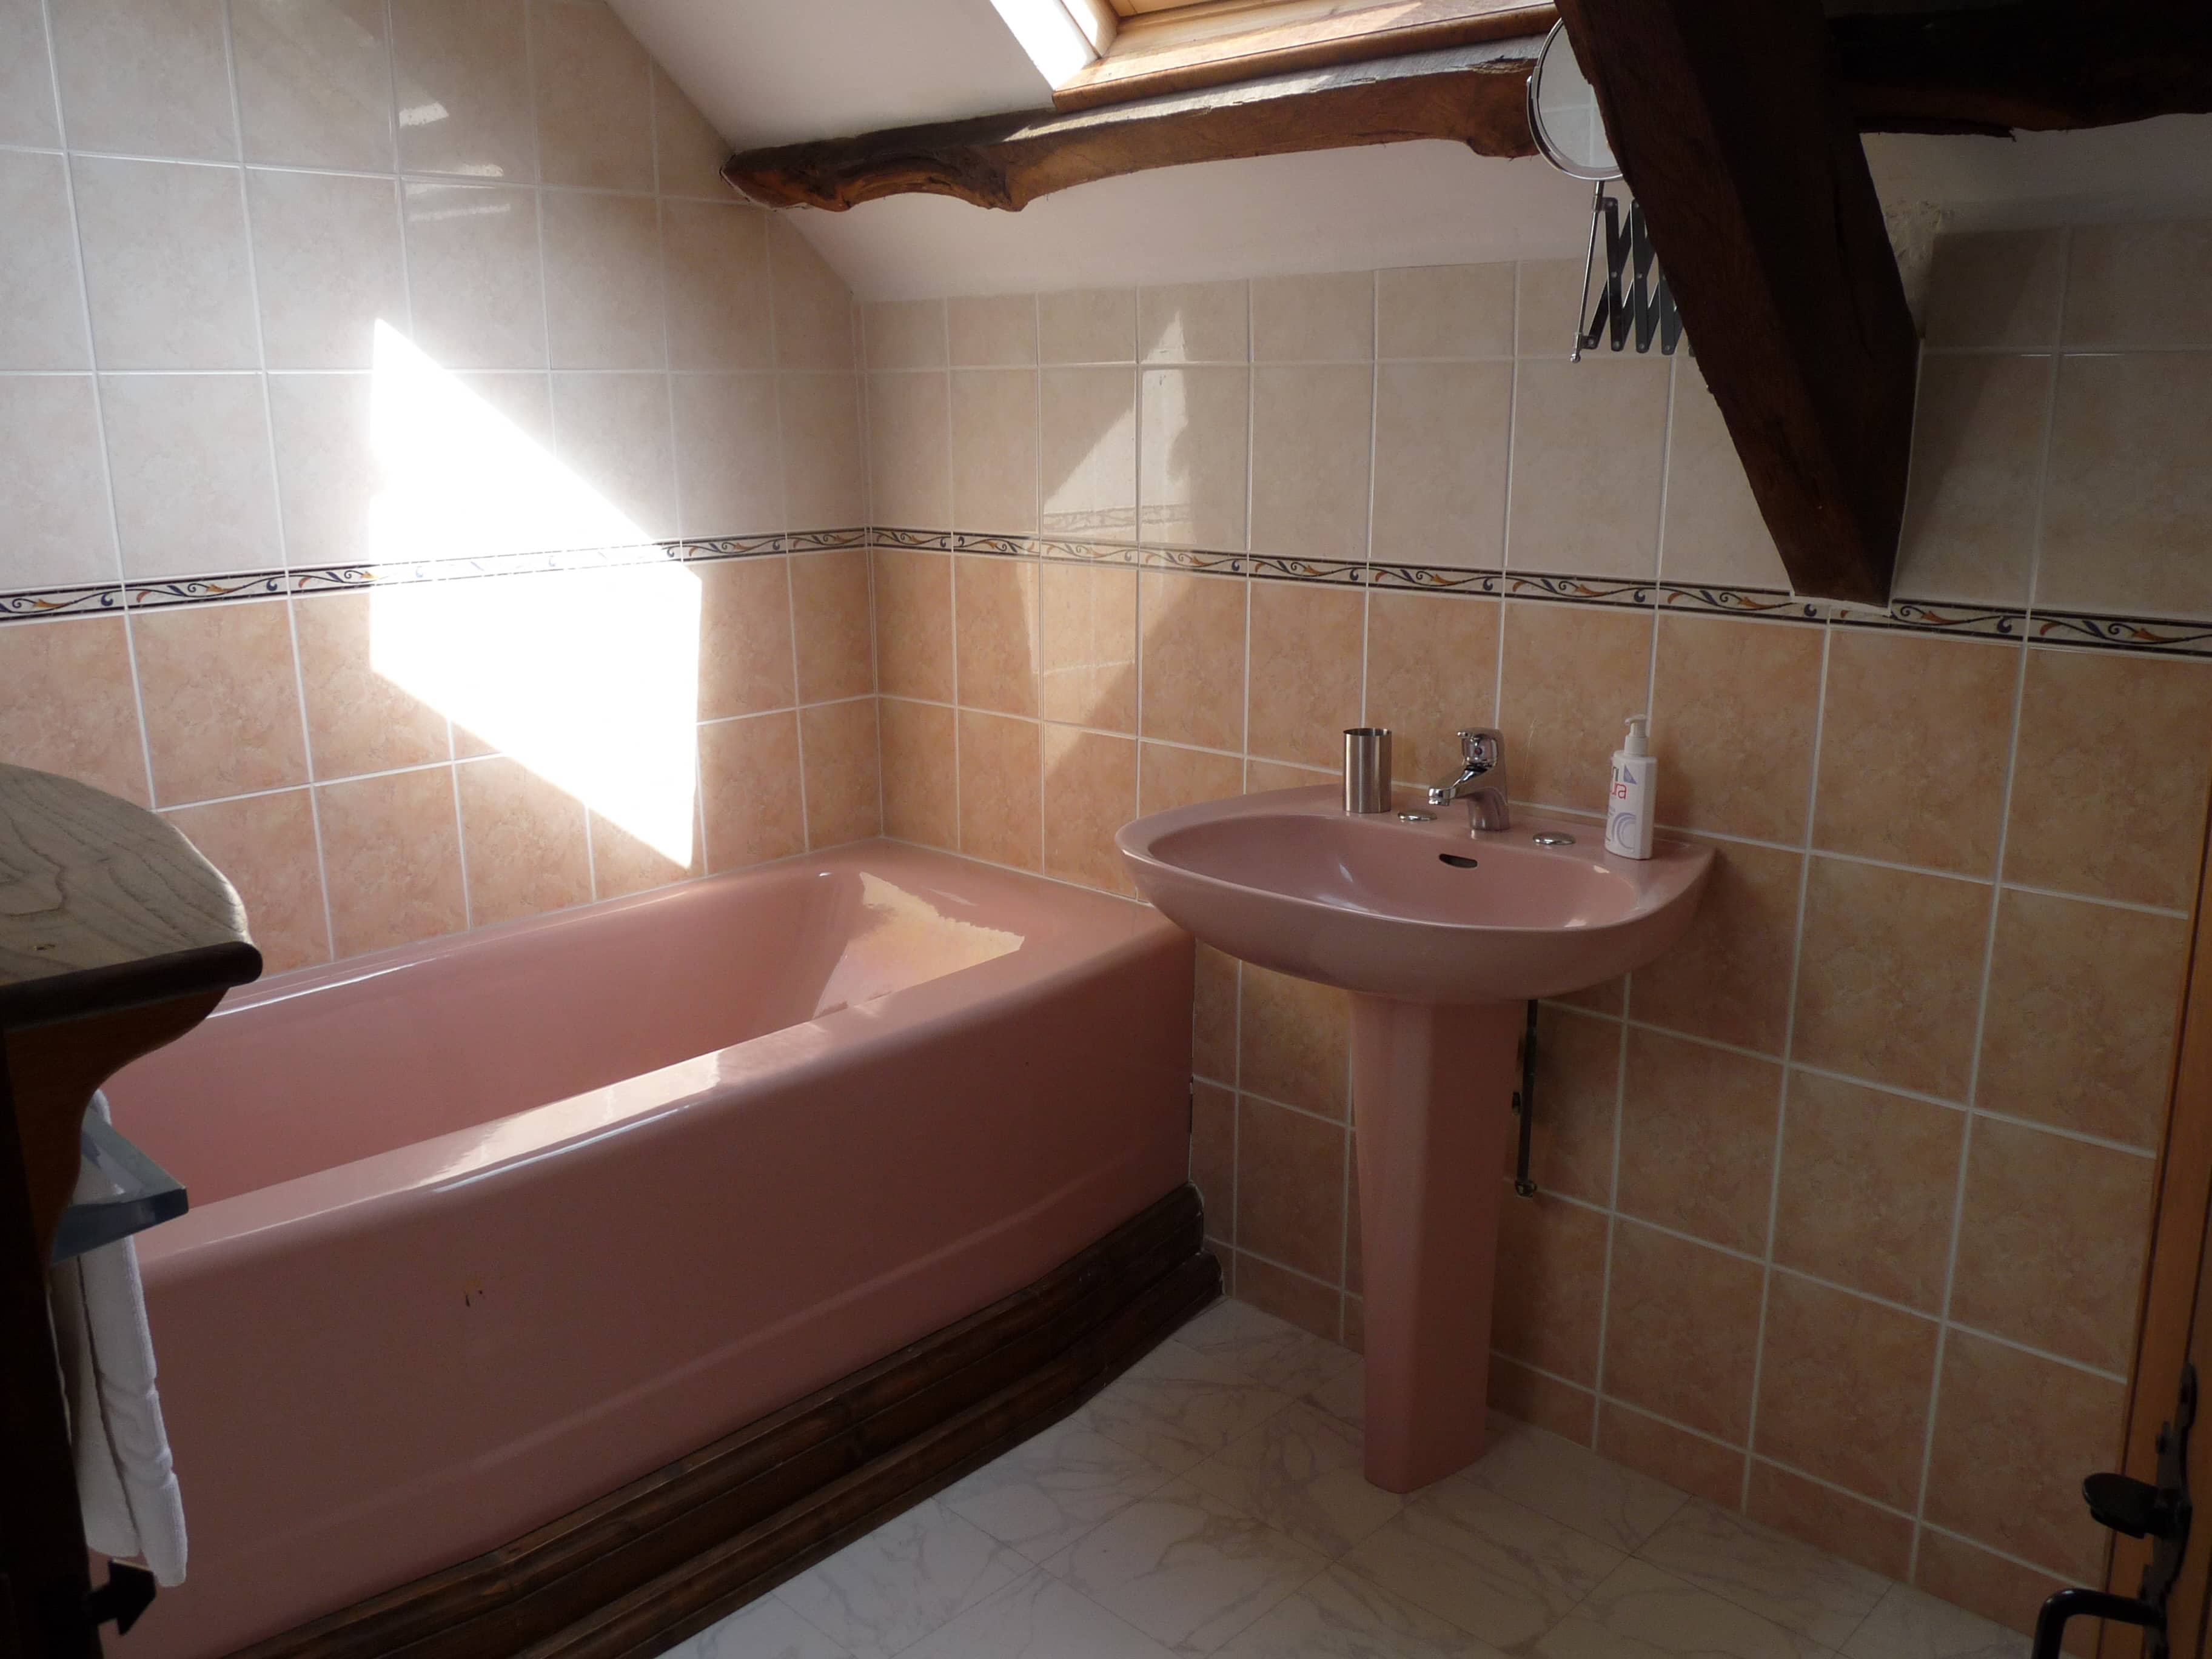 Salle de bain moderne et élégante du gîte La Julerie en Bretagne, France, avec une douche à l'italienne, des carreaux en mosaïque et des équipements haut de gamme. Idéale pour se rafraîchir après une journée de visites en Bretagne.